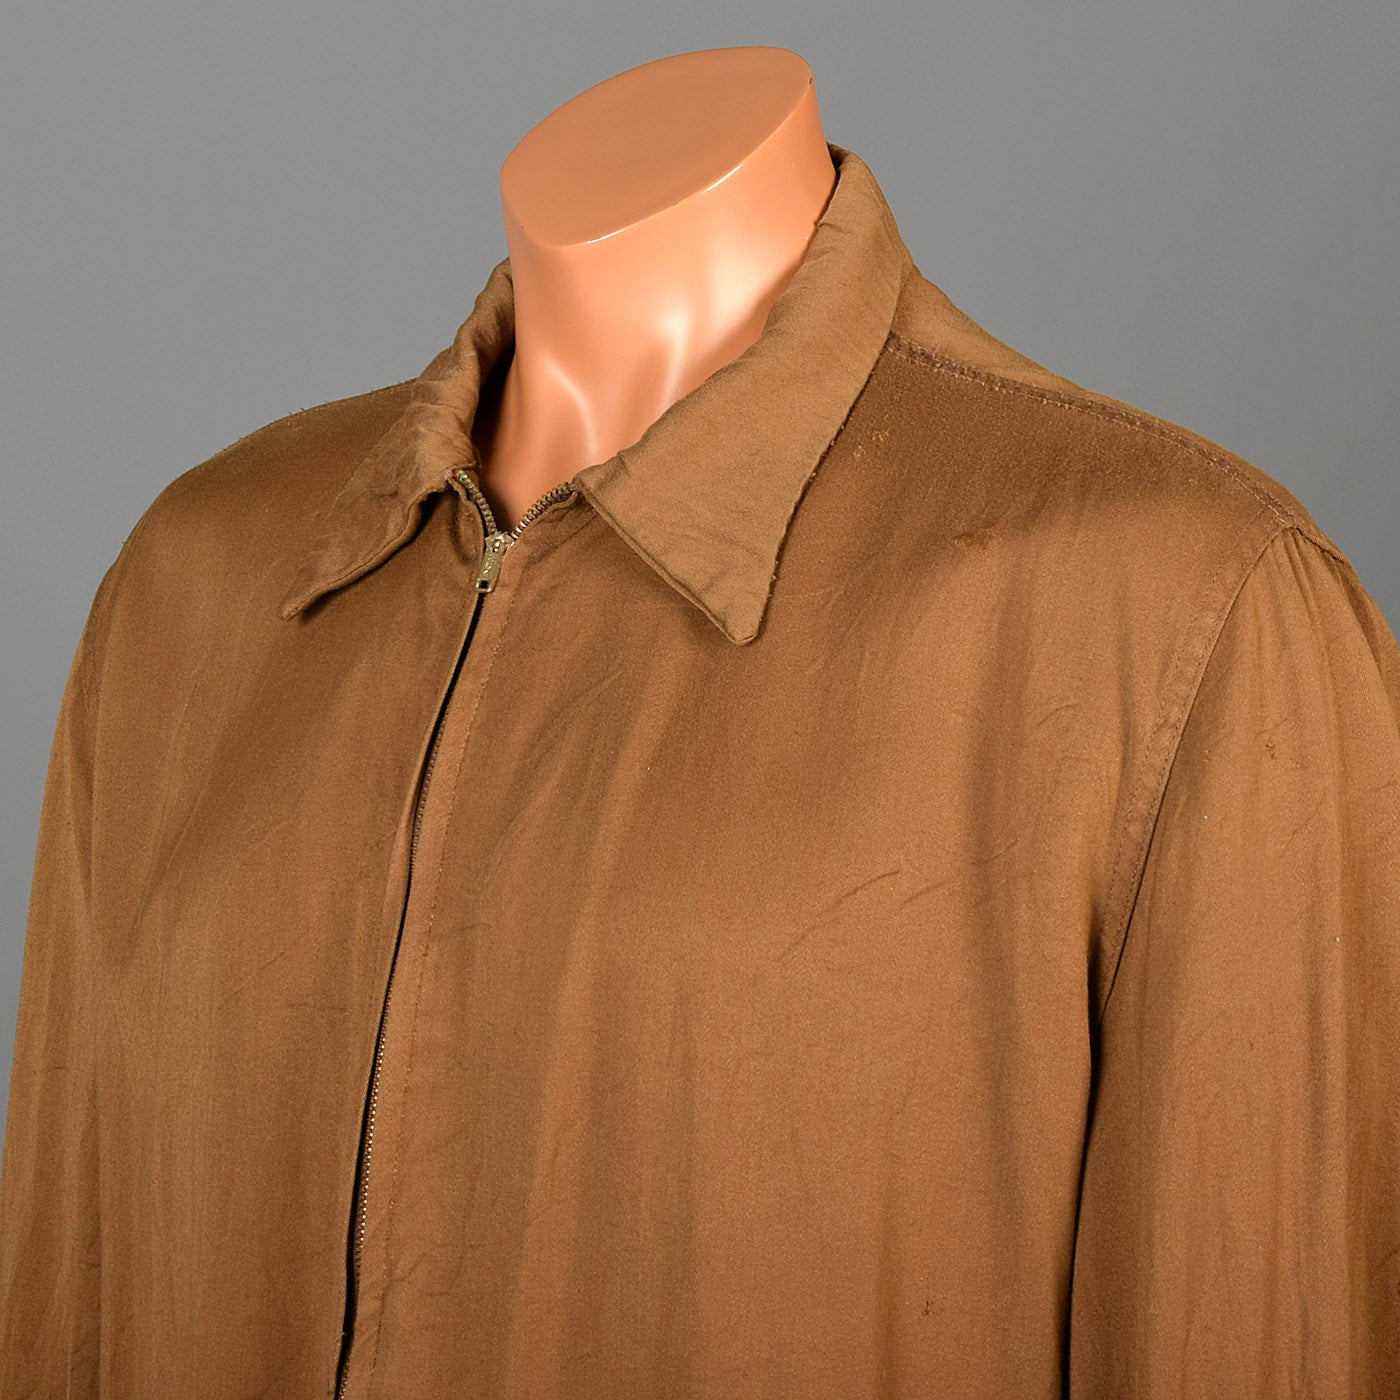 1950s Mens Gabardine Jacket with Metal Zip Front